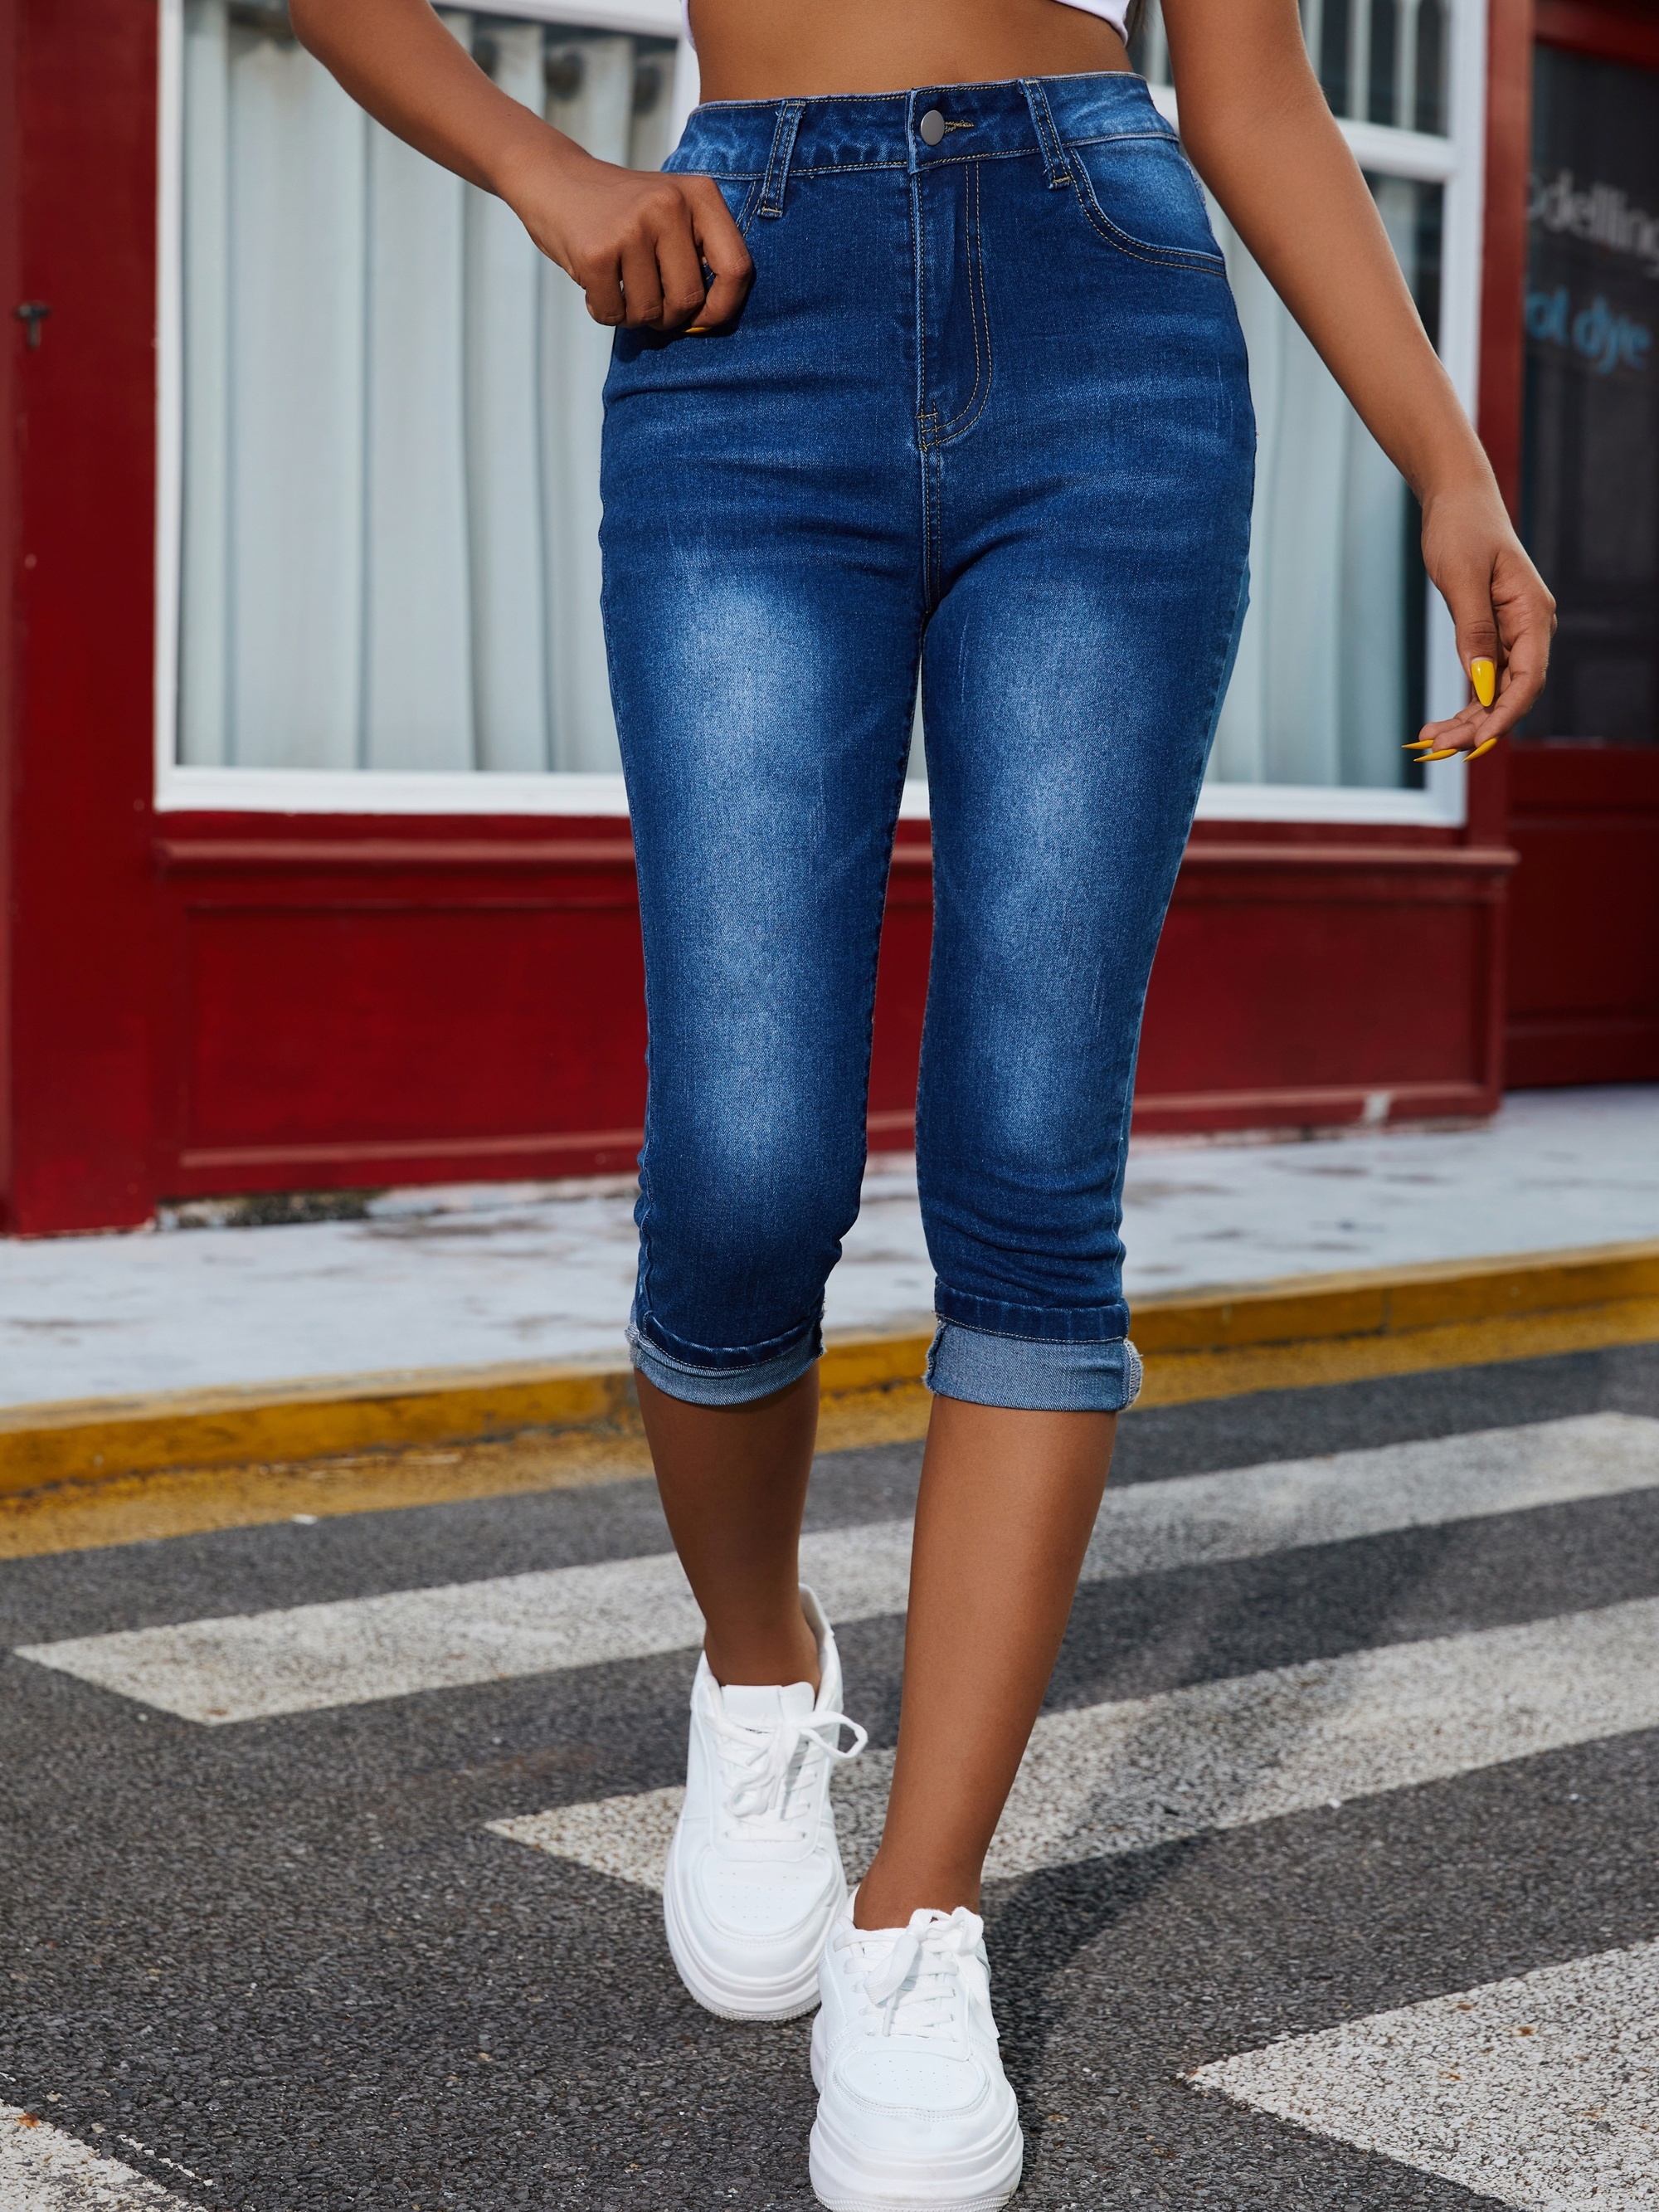 Blue Mid-Stretch Capris Denim Jeans, Slim Fit Slant Pockets Versatile Denim  Trousers, Women's Denim Jeans & Clothing